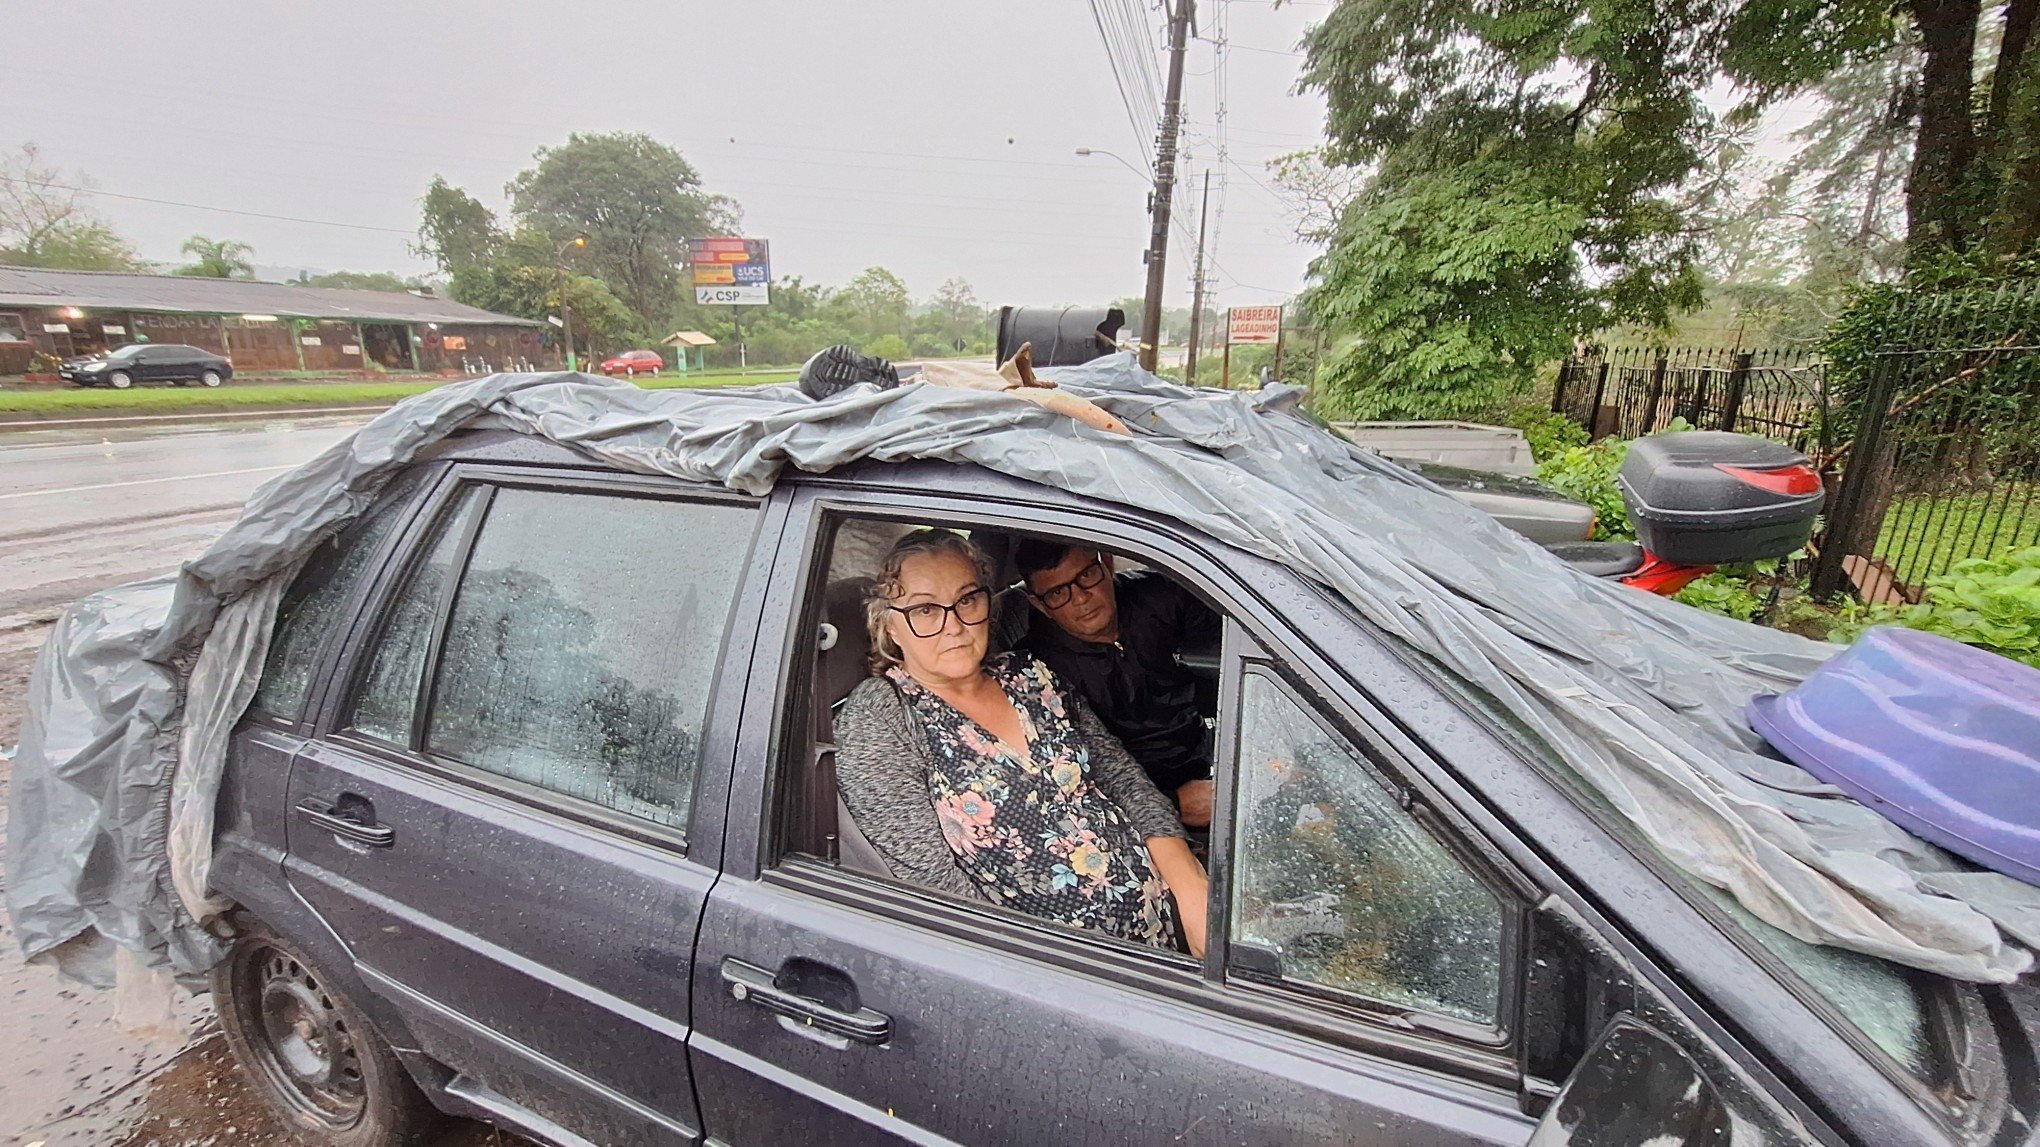 TEMPESTADE: Casal mora dentro de carro emprestado por vizinho após enchente encobrir casas em São Sebastião do Caí